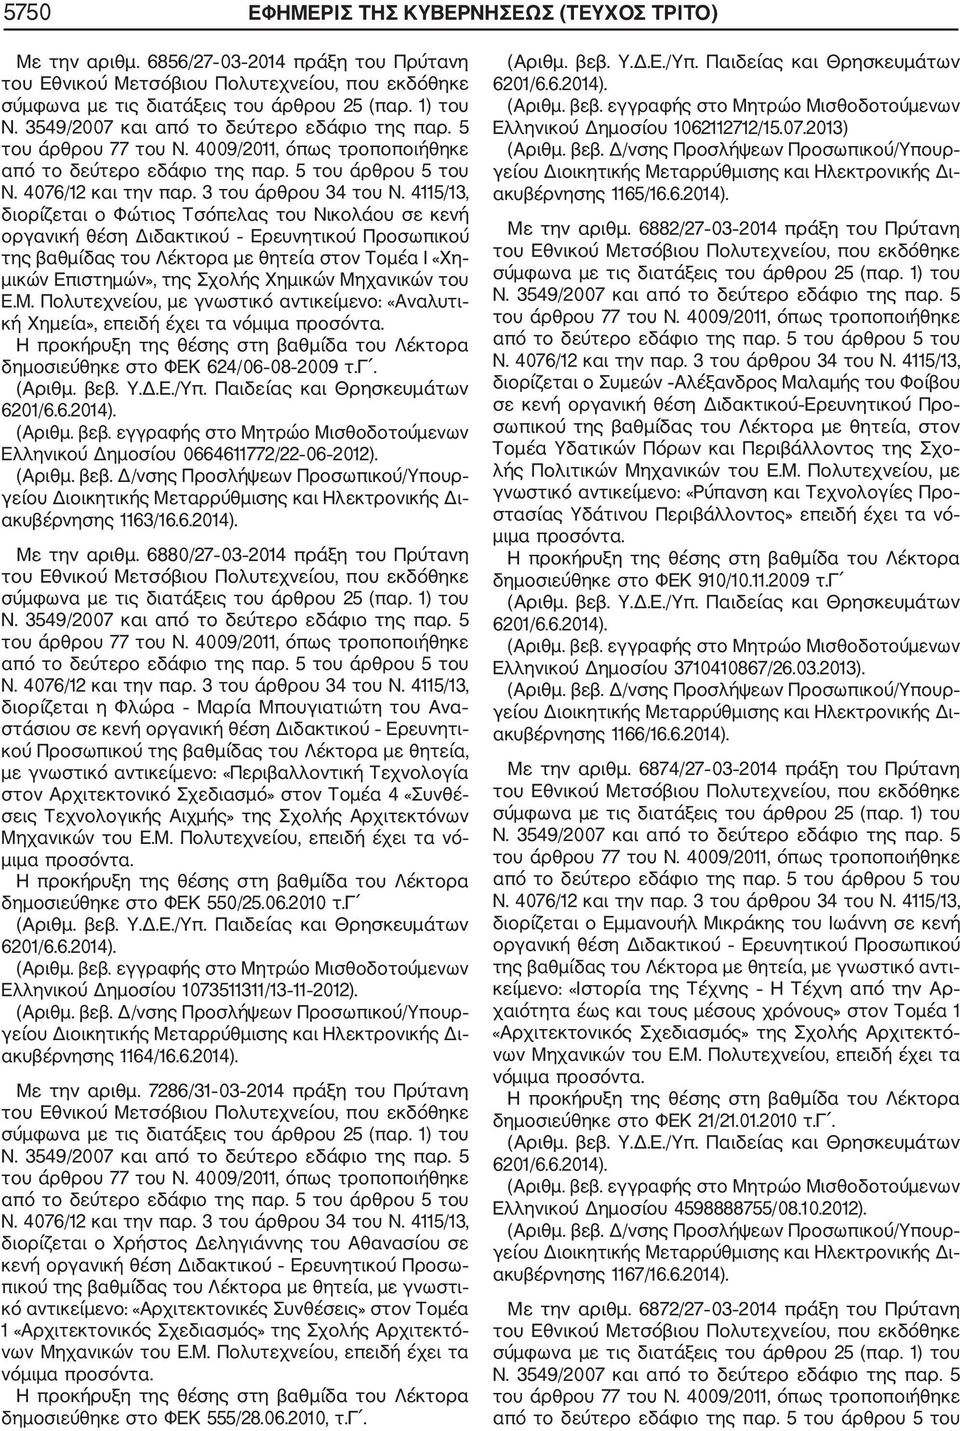 χανικών του Ε.Μ. Πολυτεχνείου, με γνωστικό αντικείμενο: «Αναλυτι κή Χημεία», επειδή έχει τα νό δημοσιεύθηκε στο ΦΕΚ 624/06 08 2009 τ.γ. Ελληνικού Δημοσίου 0664611772/22 06 2012). ακυβέρνησης 1163/16.